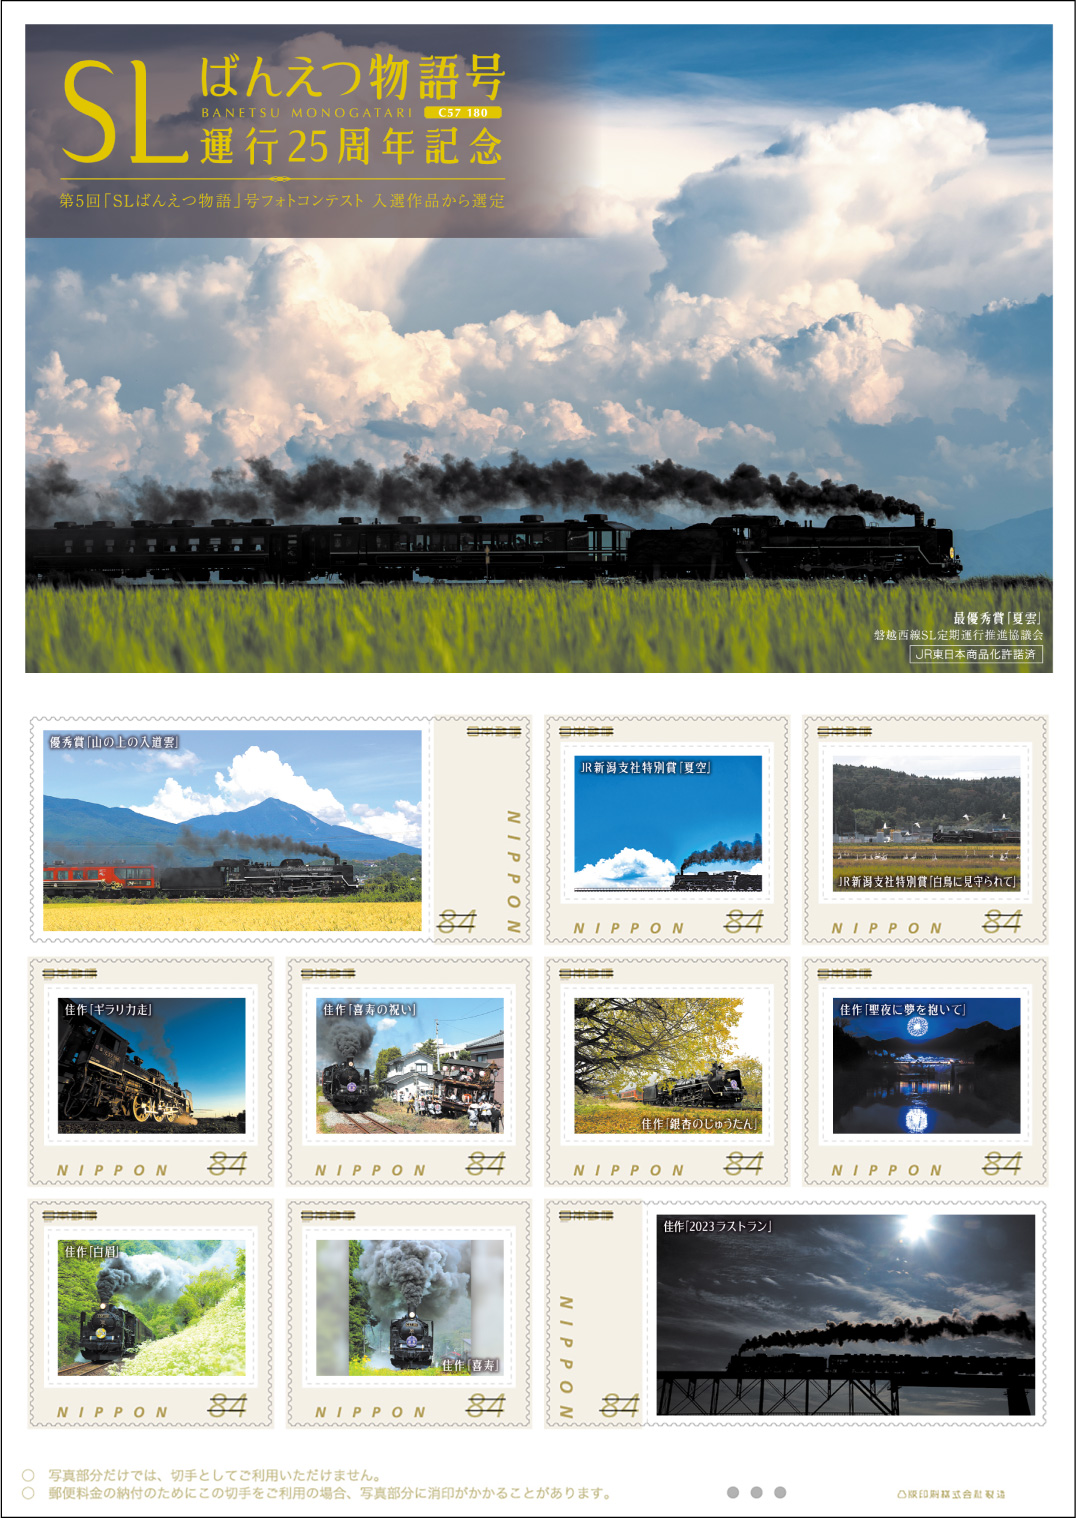 オリジナル フレーム切手「ＳＬばんえつ物語号運行25周年記念」 の販売開始